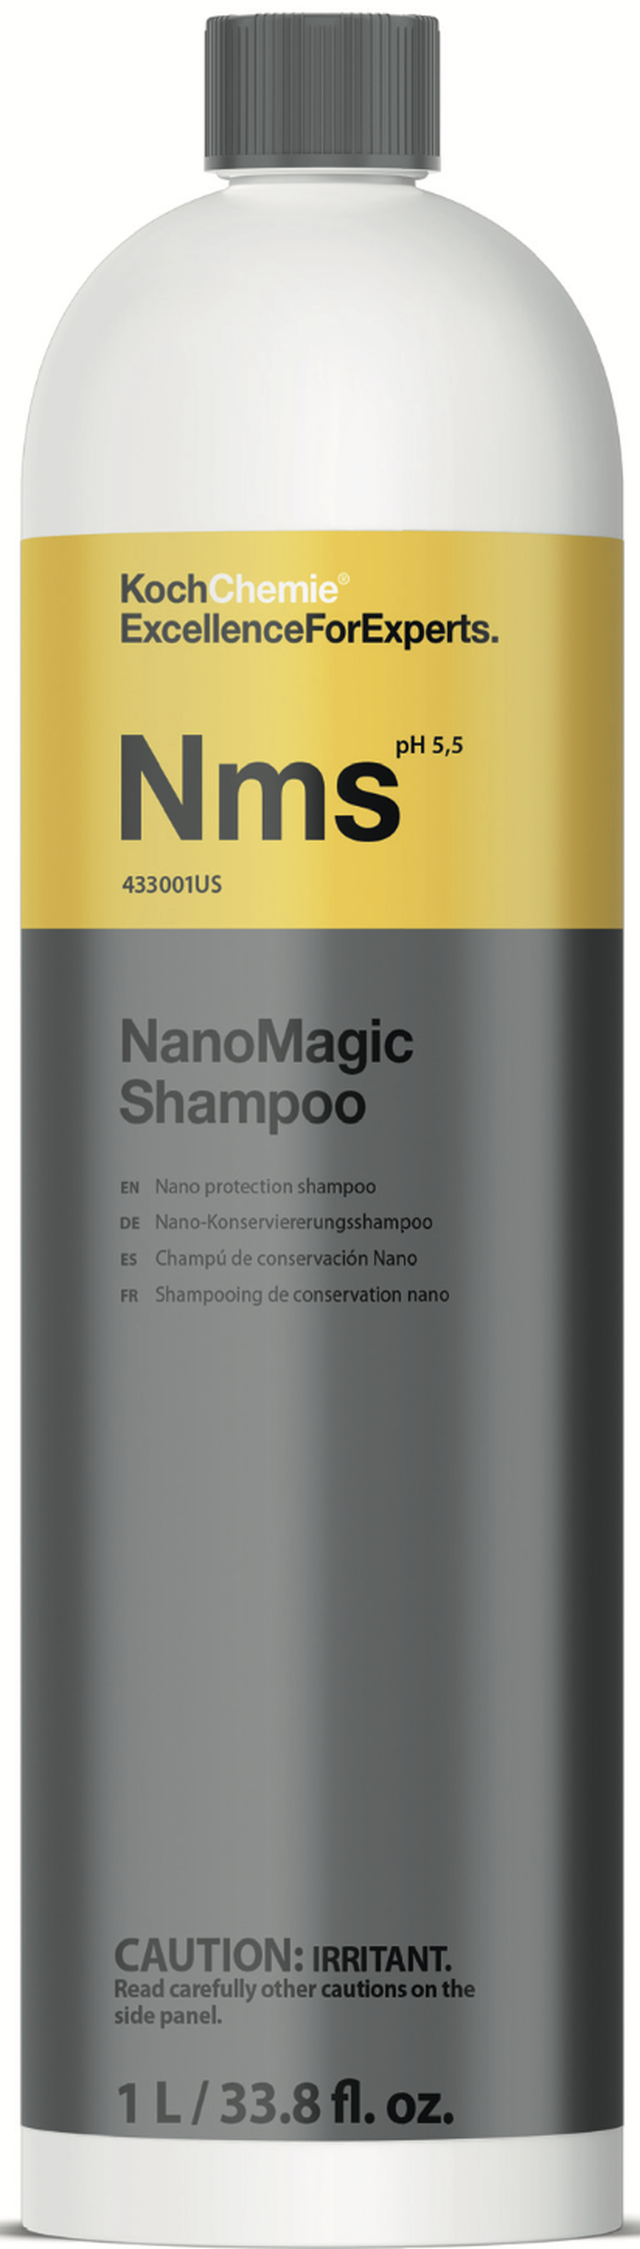 Koch Chemie NanoMagic Shampoo 1L